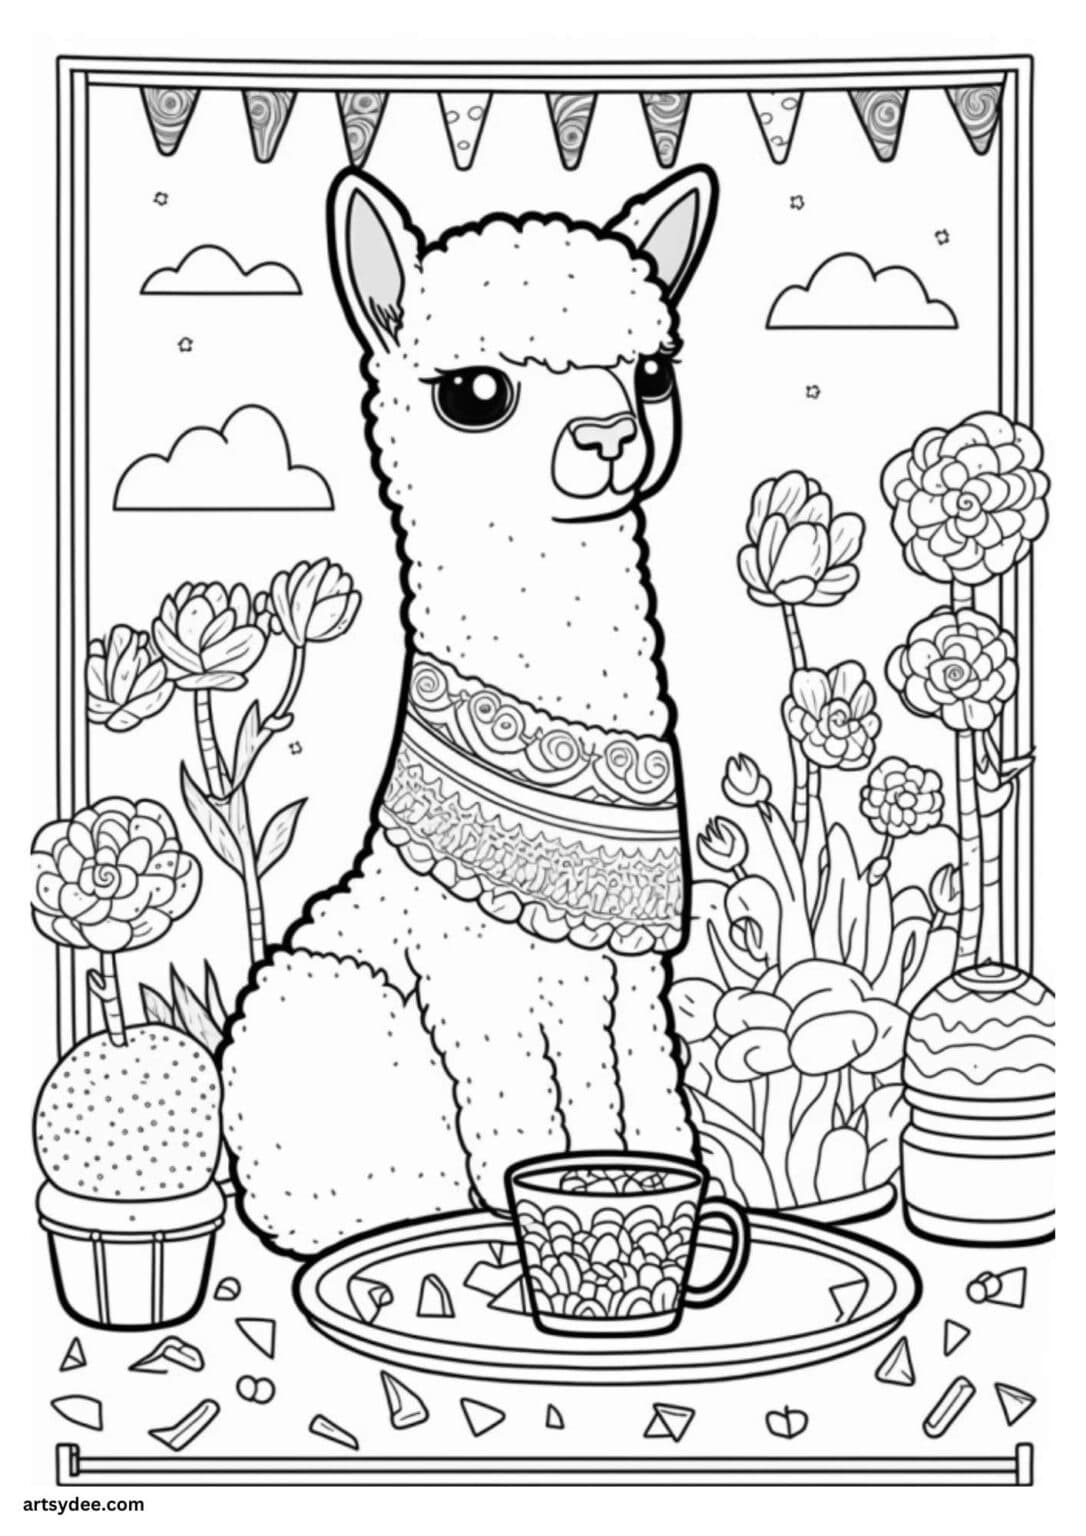 21 Free Llama Coloring Page Printables - Artsydee - Drawing, Painting ...